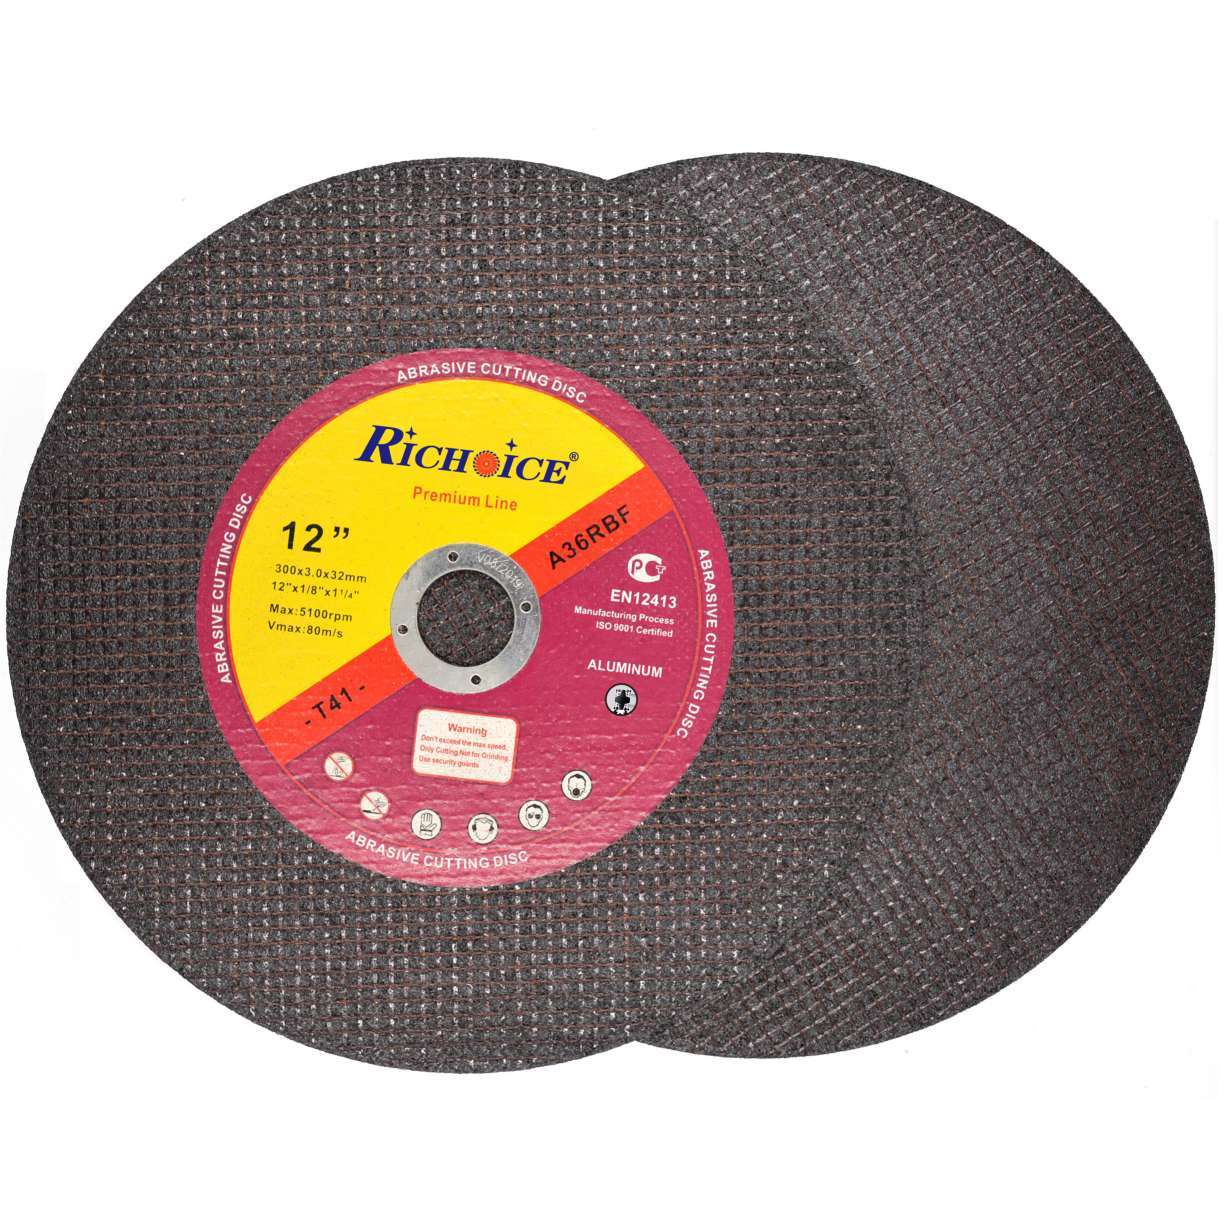 Aluminium Cutting Disc With Label